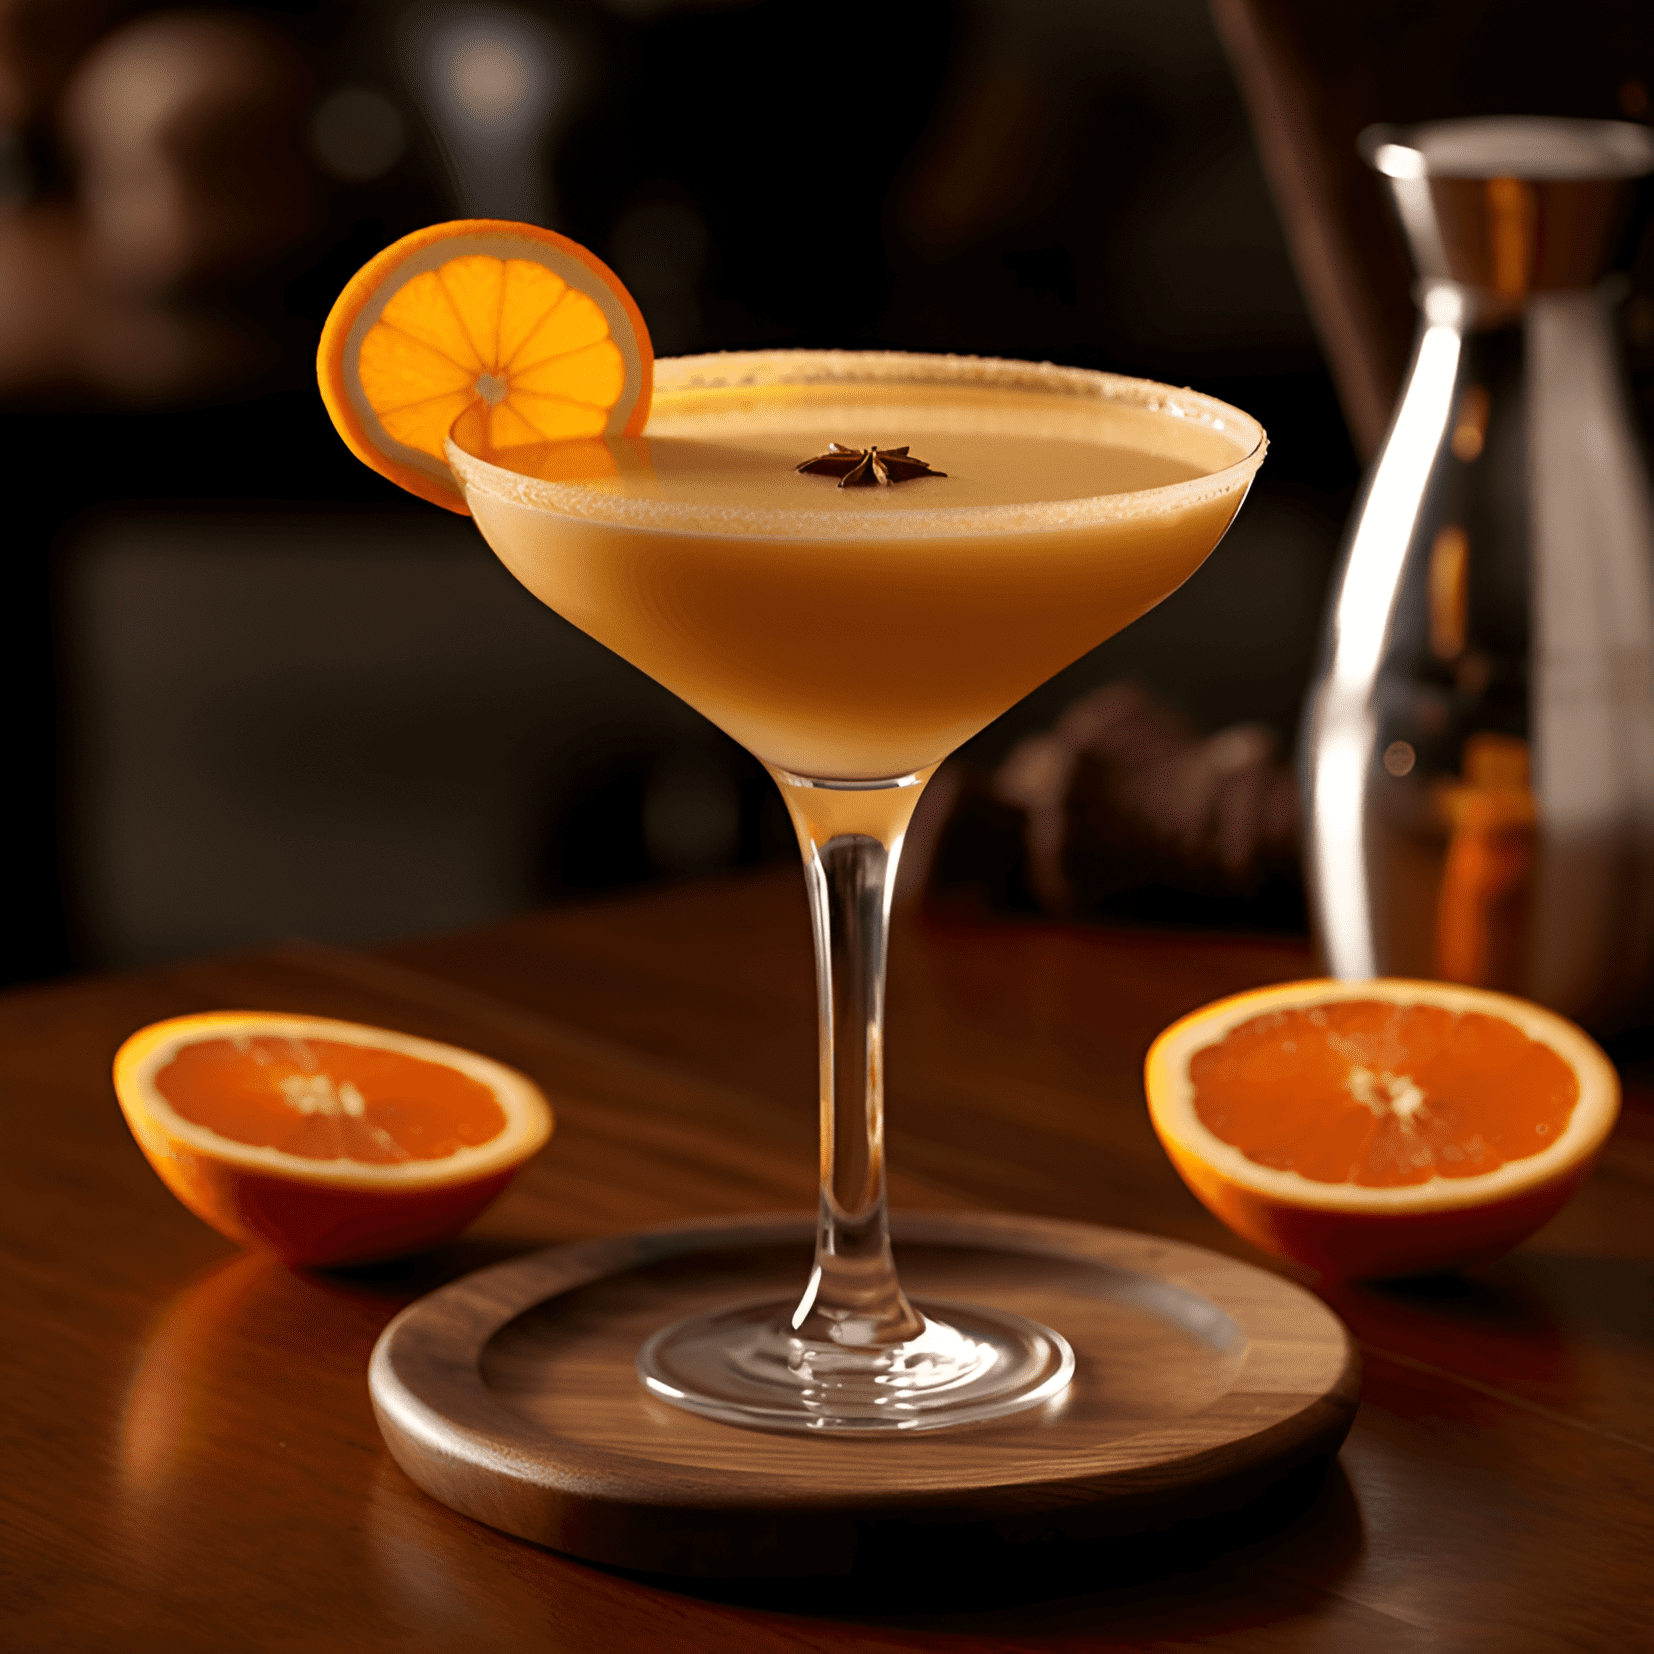 Orange Flip Cóctel Receta - El Orange Flip tiene una textura cremosa y suave con un equilibrio de dulzura y un toque de acidez de la naranja. Es una bebida rica y aterciopelada con un acabado espumoso y un calor sutil del alcohol.